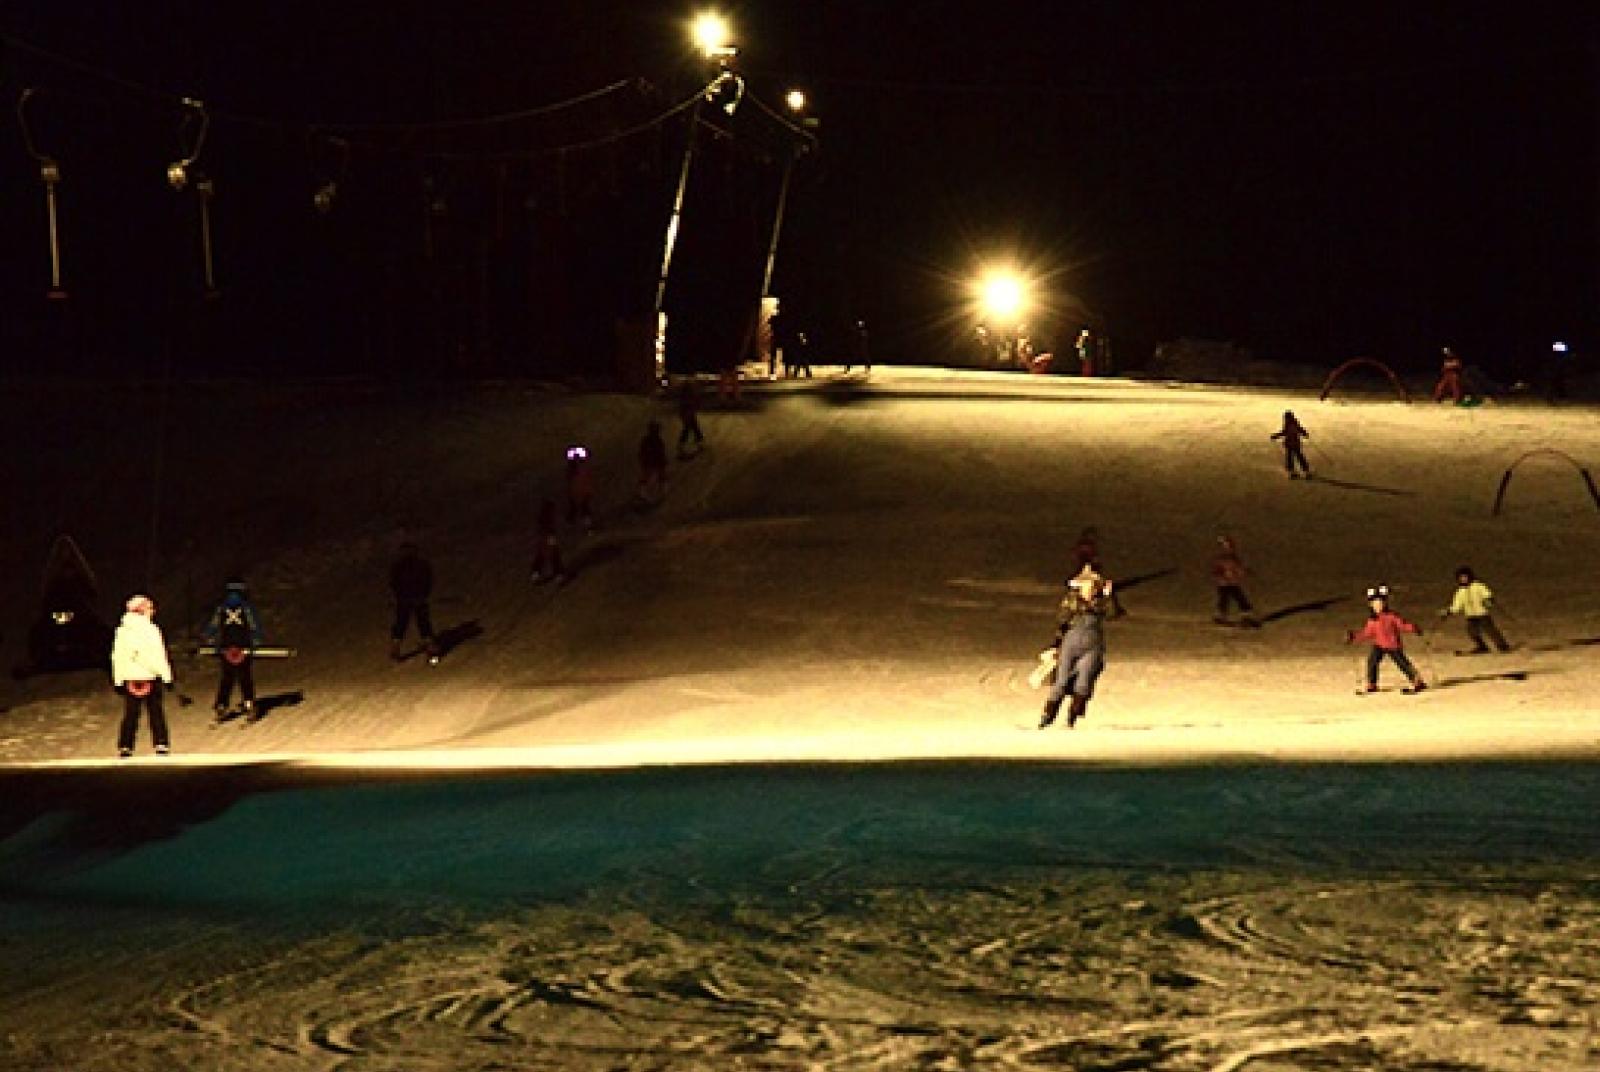 La "Befana" à ski : ski nocturne